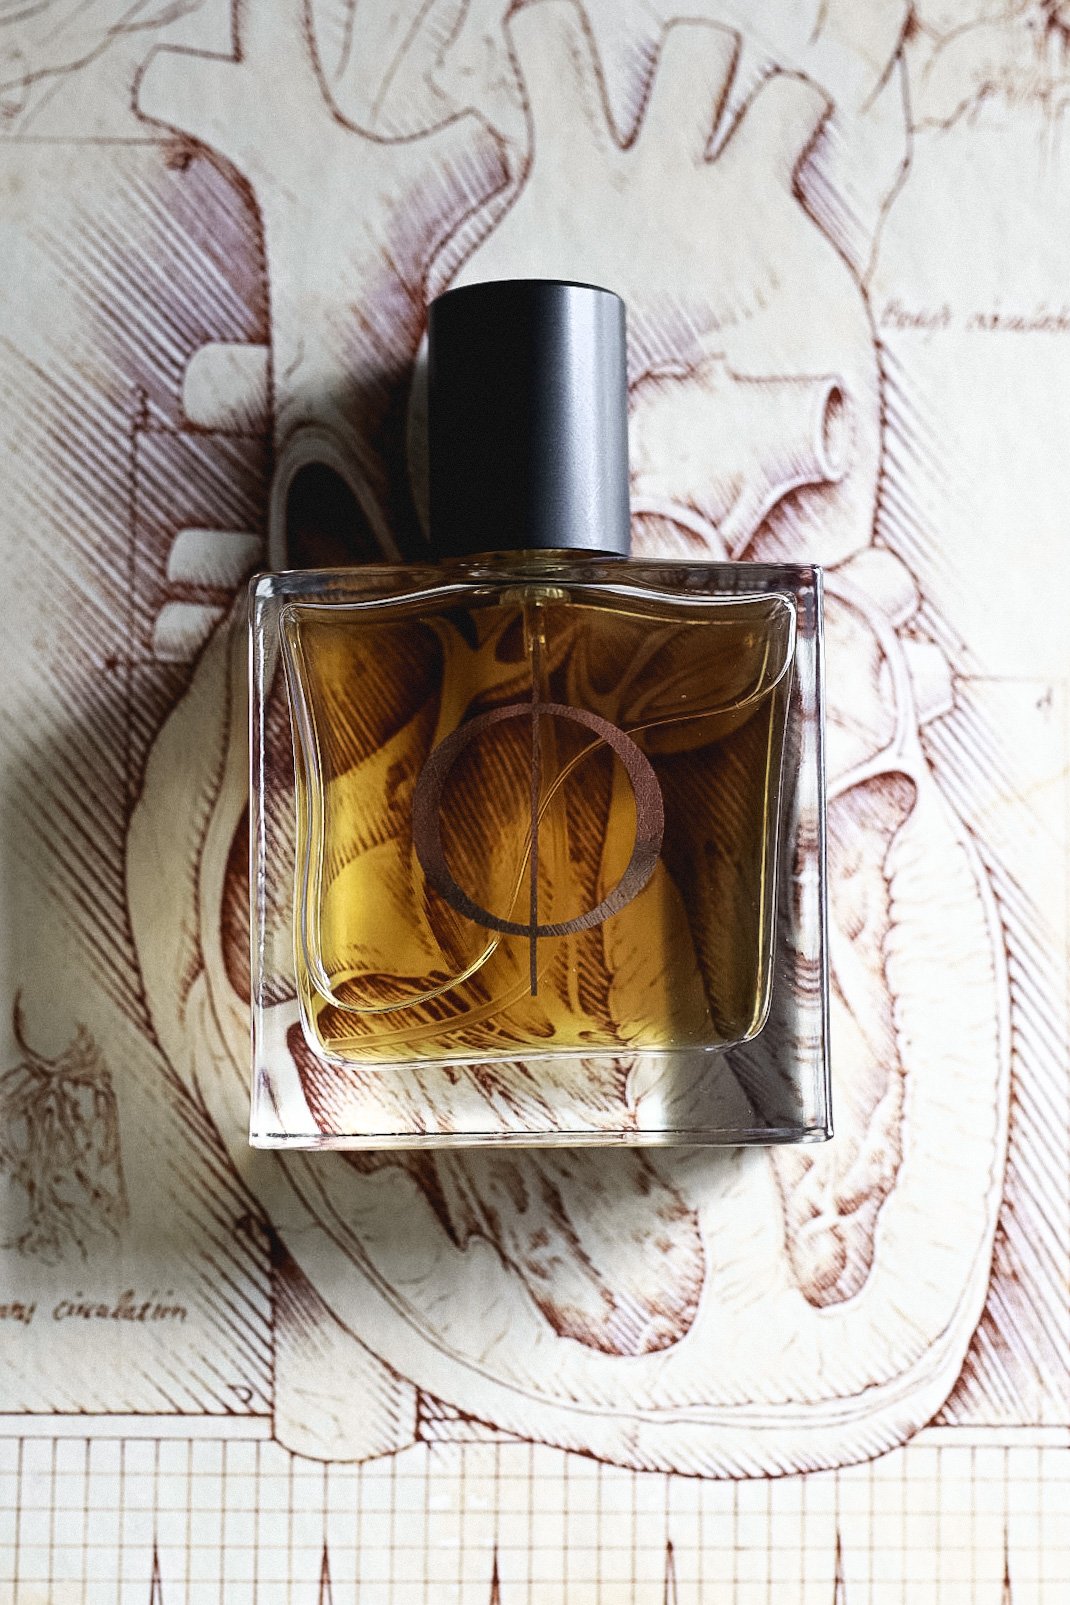 Desert Fleur Botanical Perfume – Blackbirddagger